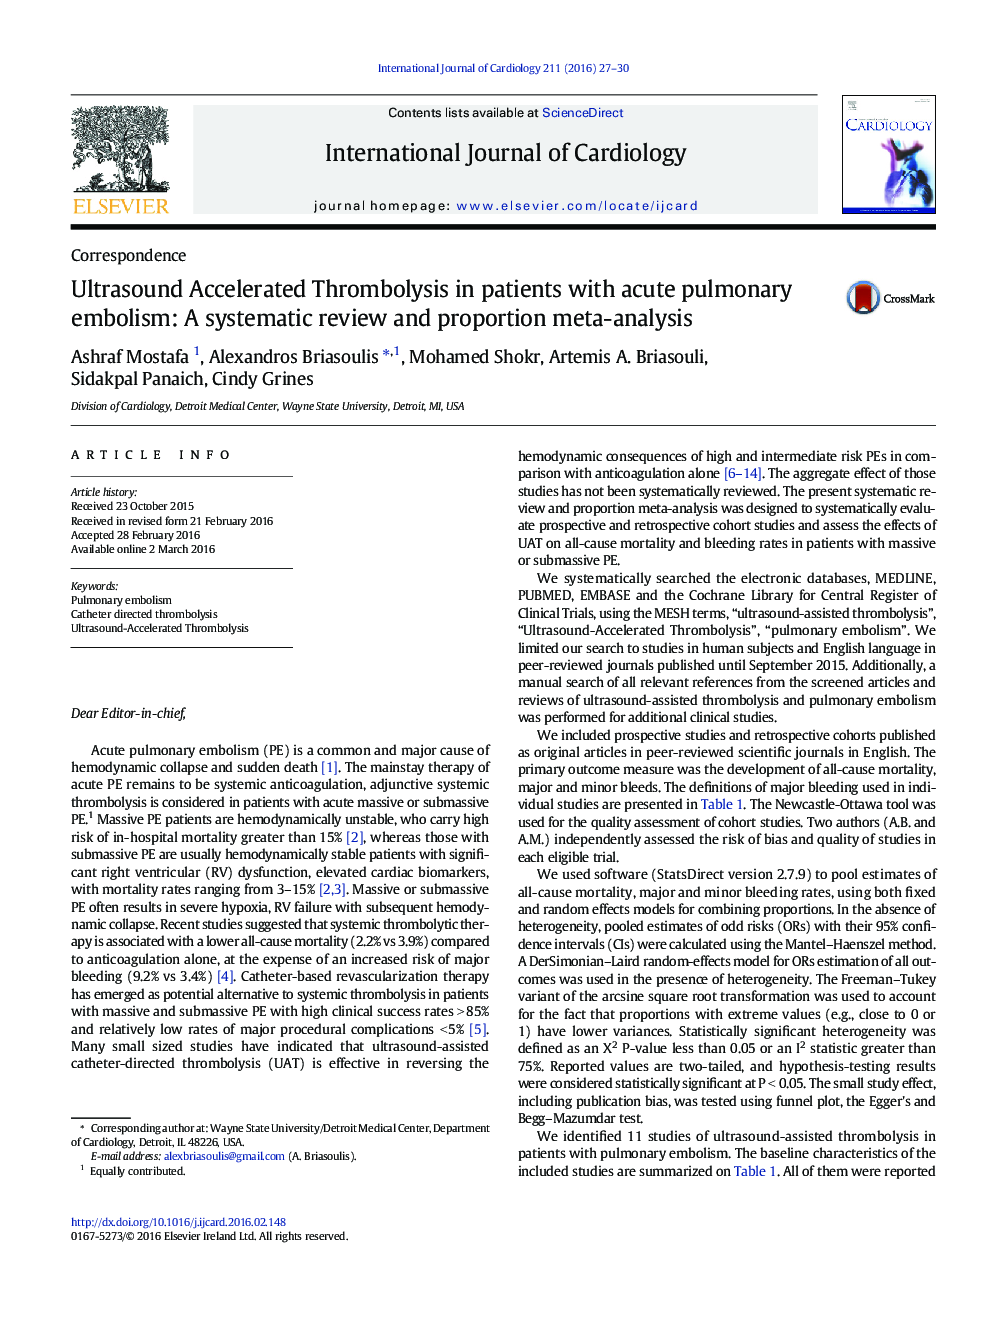 ترومبولیسیت تسریع شده با سونوگرافی در بیماران مبتلا به آمبولی حاد ریوی: یک بررسی متداول و متا آنالیز 